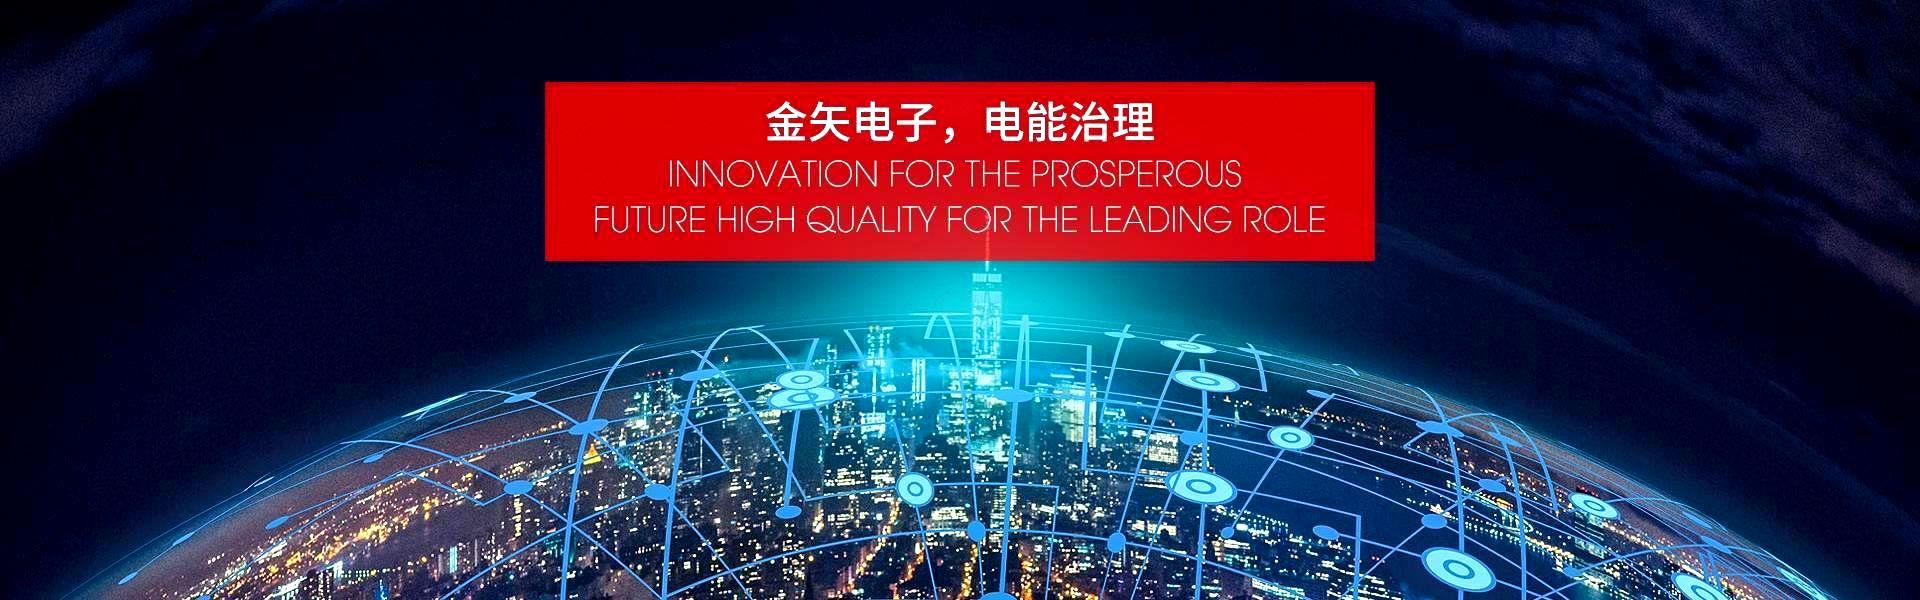 广州市云顶国际电子有限公司的产品有无电弧开关、晶闸管开关、电抗器等等。